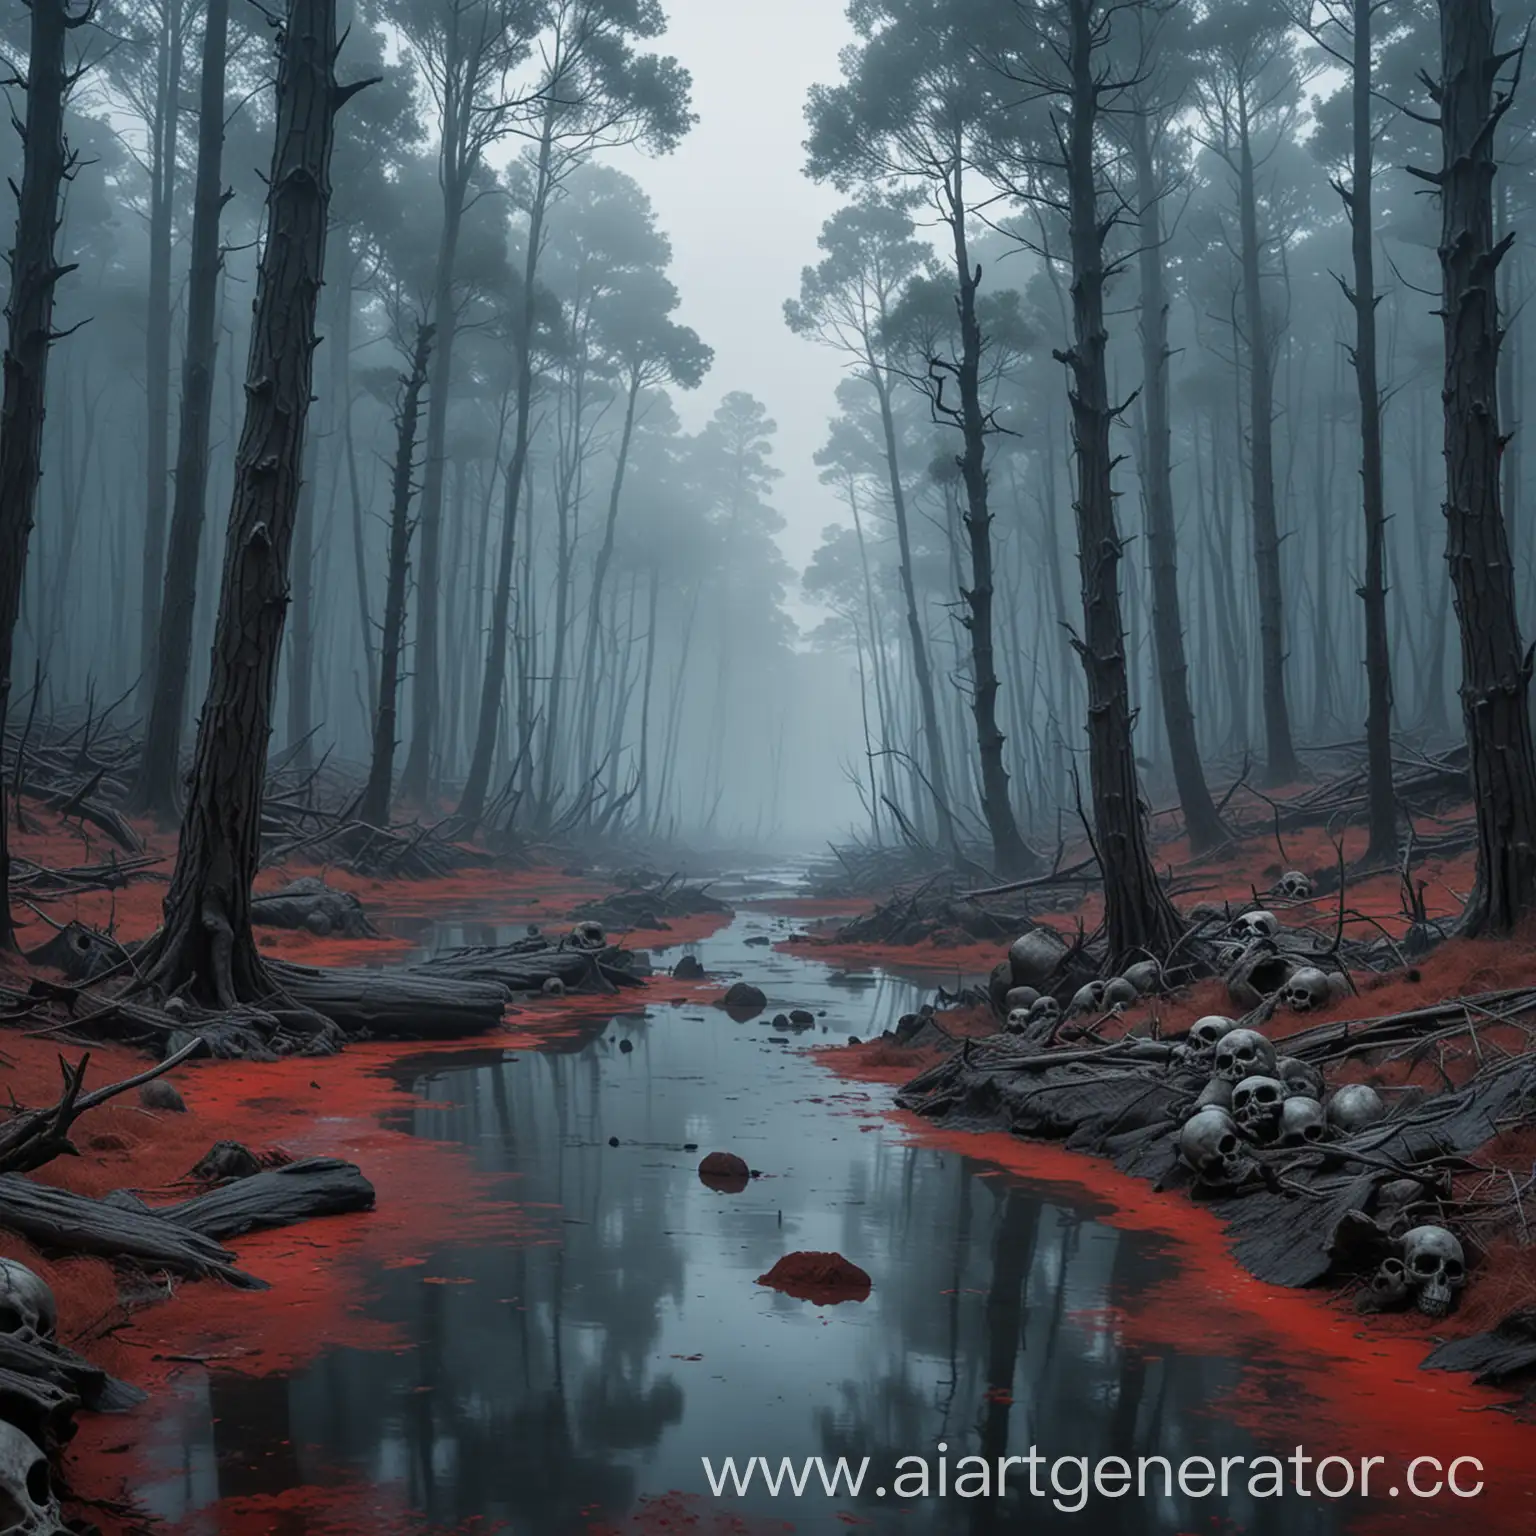 Тёмный густой сосновый лес, окутанный синим туманом, через который прорезается кроваво-красная река, несущая по течению черепа